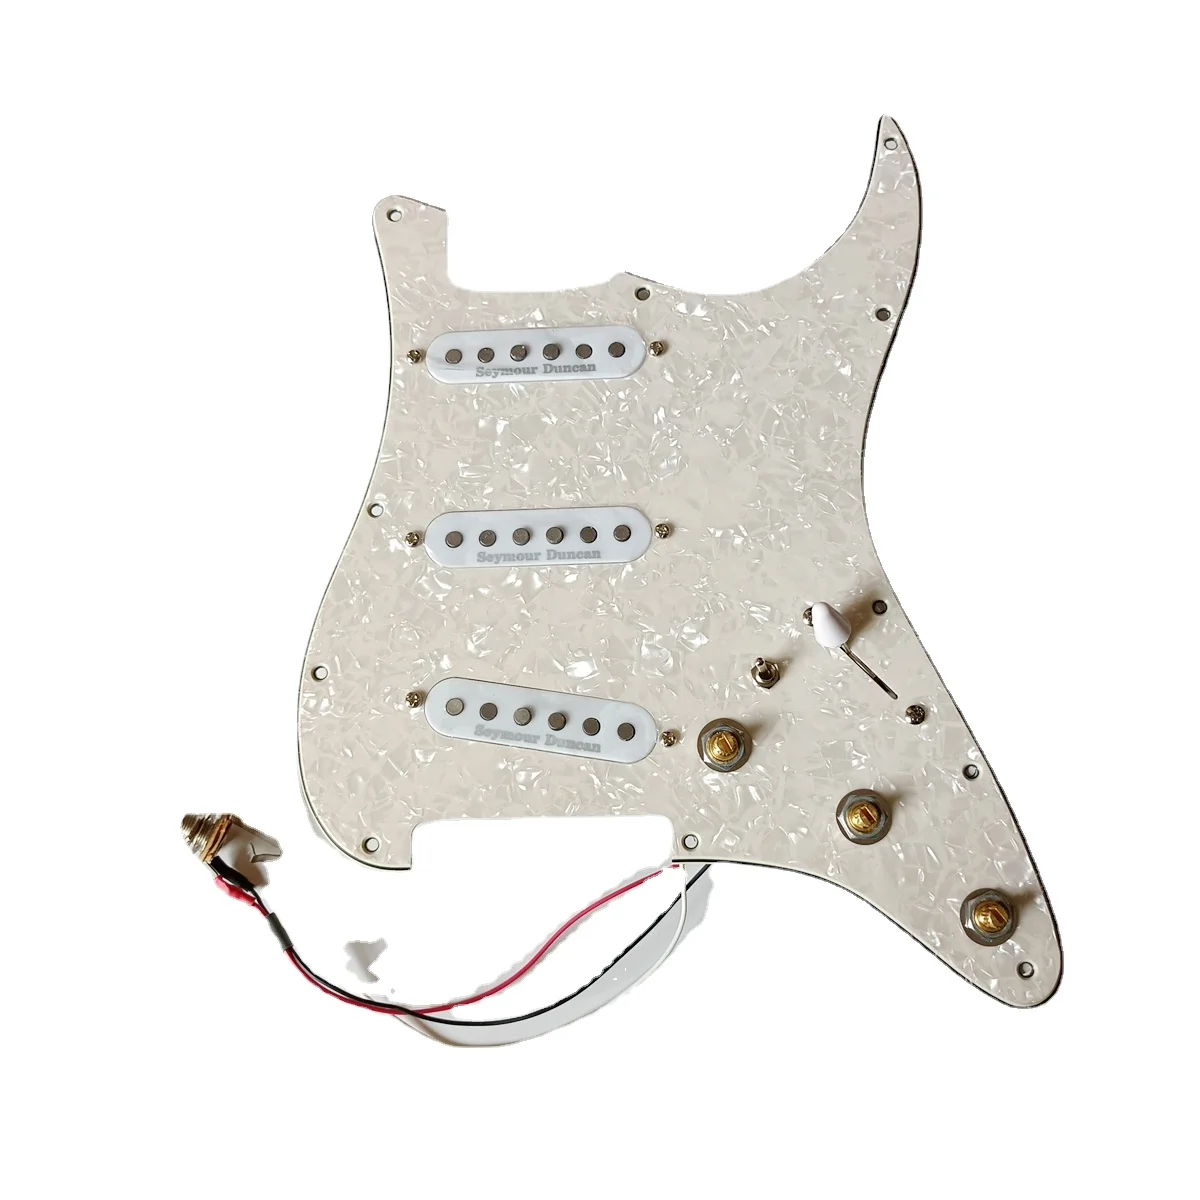 

Обновленный Предварительно проводной переключатель SSS Strat Pickgaurd белый Seymour Данкан SSL, многофункциональный переключатель, подходящий для гитары Fender